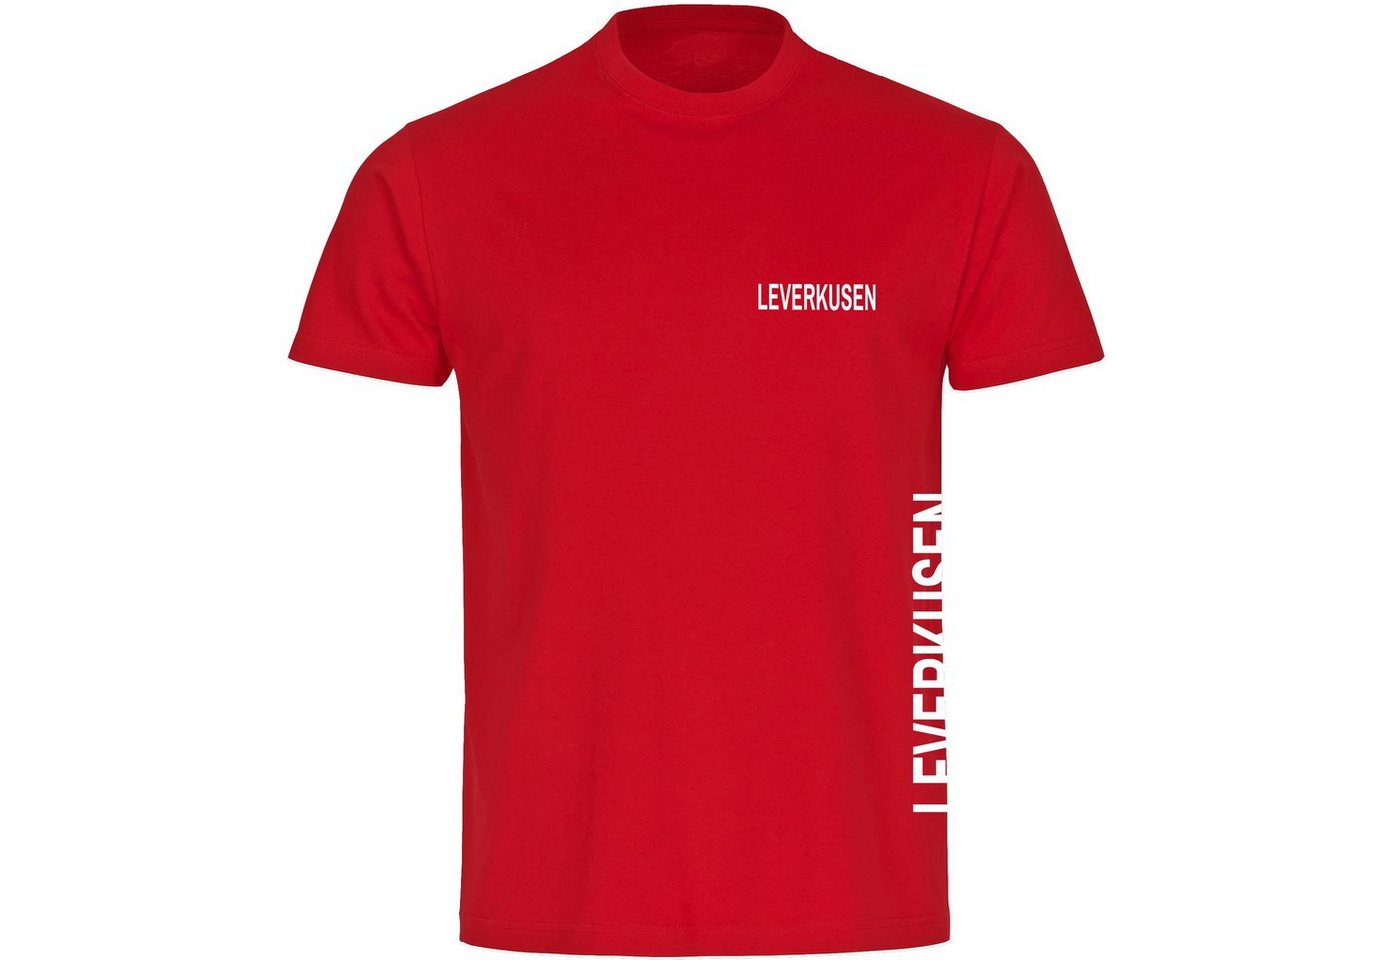 multifanshop T-Shirt Herren Leverkusen - Brust & Seite - Männer von multifanshop